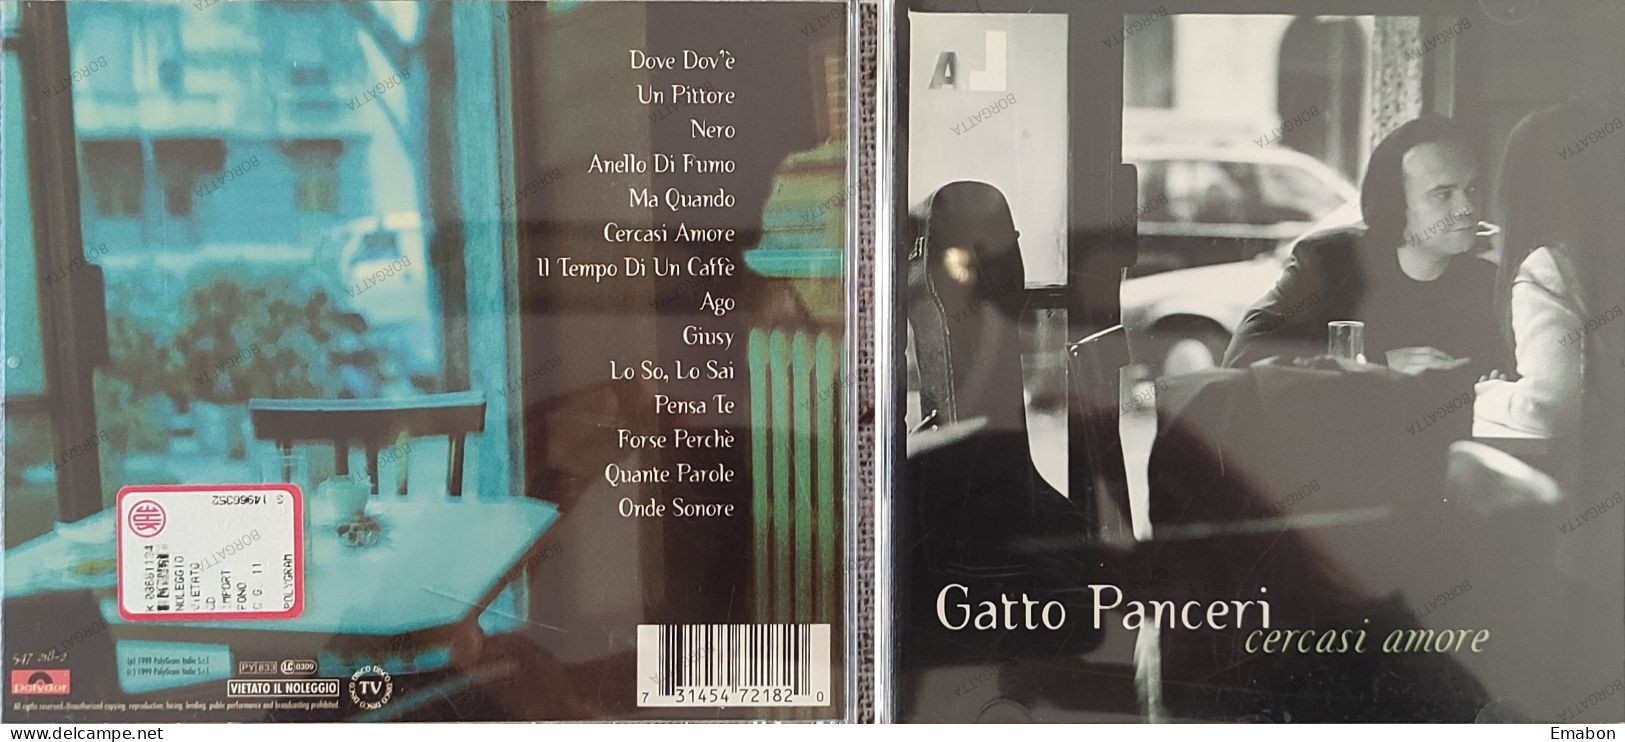 BORGATTA - ITALIANA  - Cd GATTO PANCERI -  CERCASI AMORE - POLYDOR 1999 -  USATO In Buono Stato - Other - Italian Music